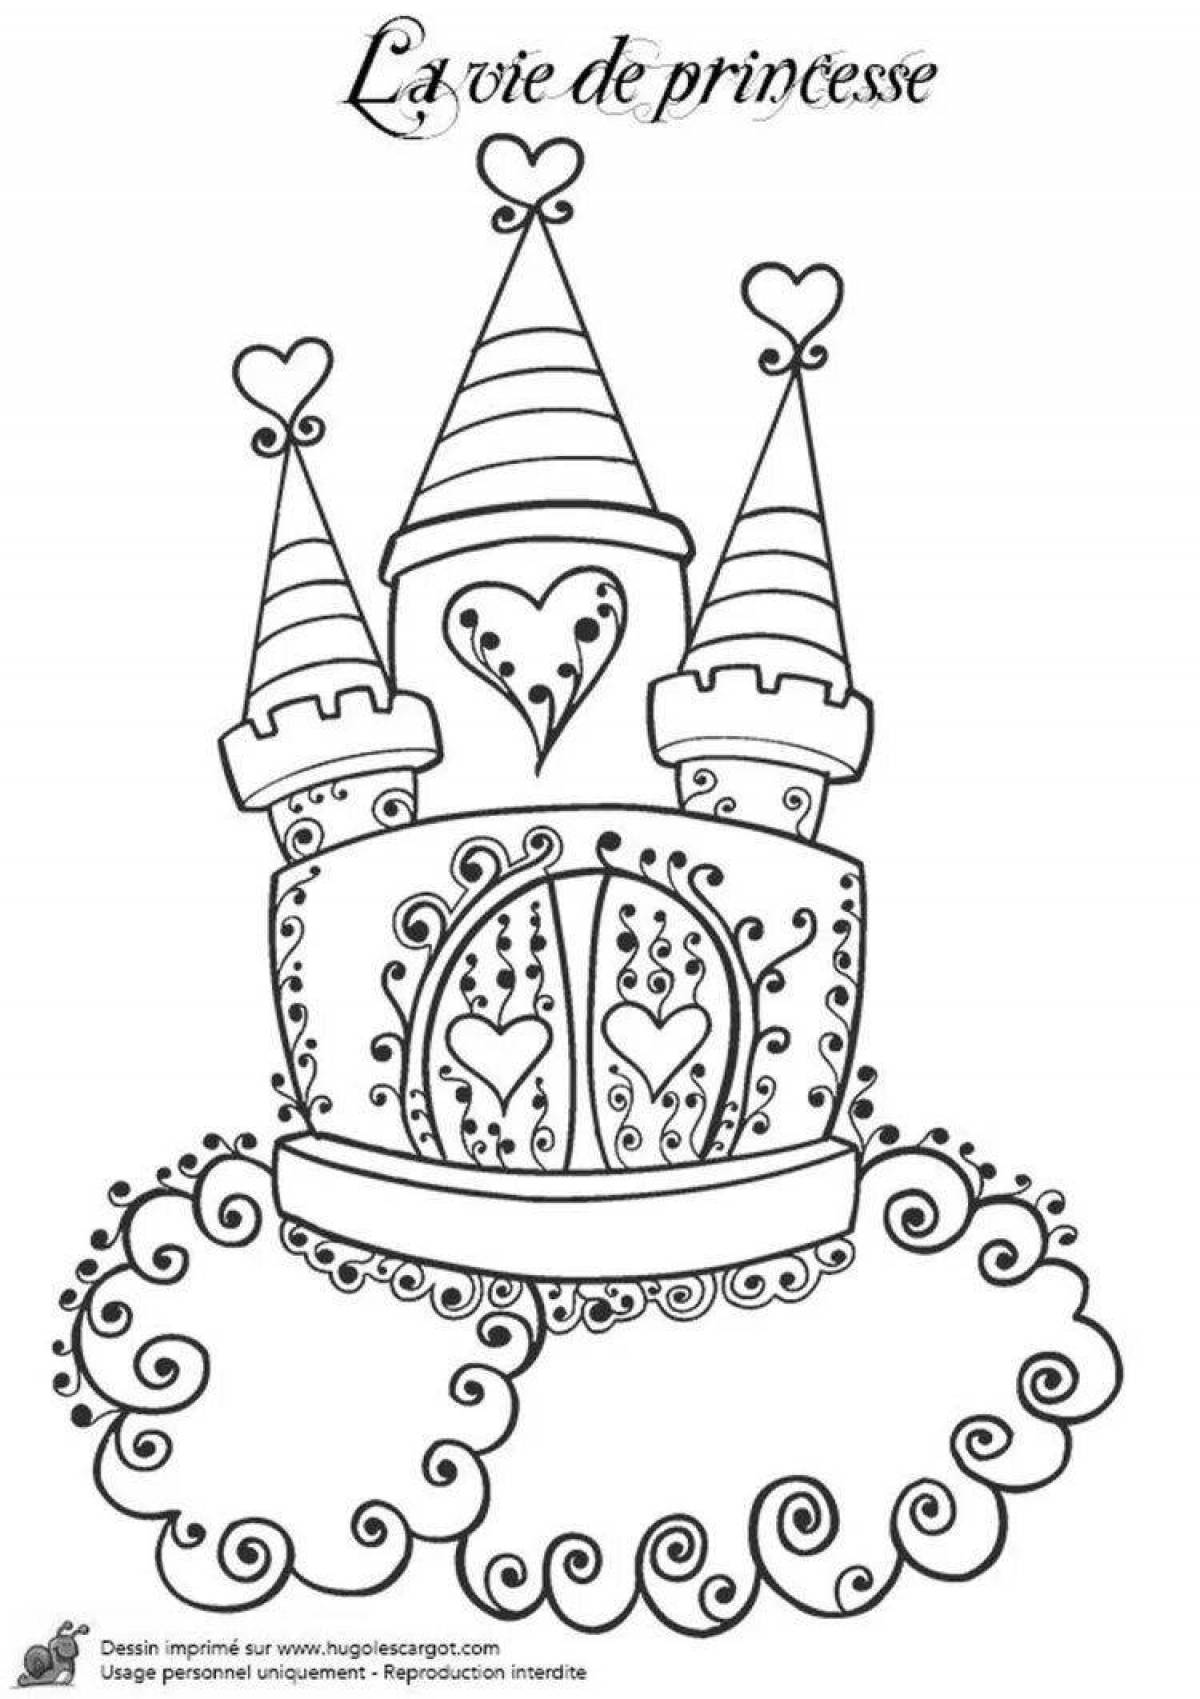 Дворцовая раскраска для девочек замок принцессы